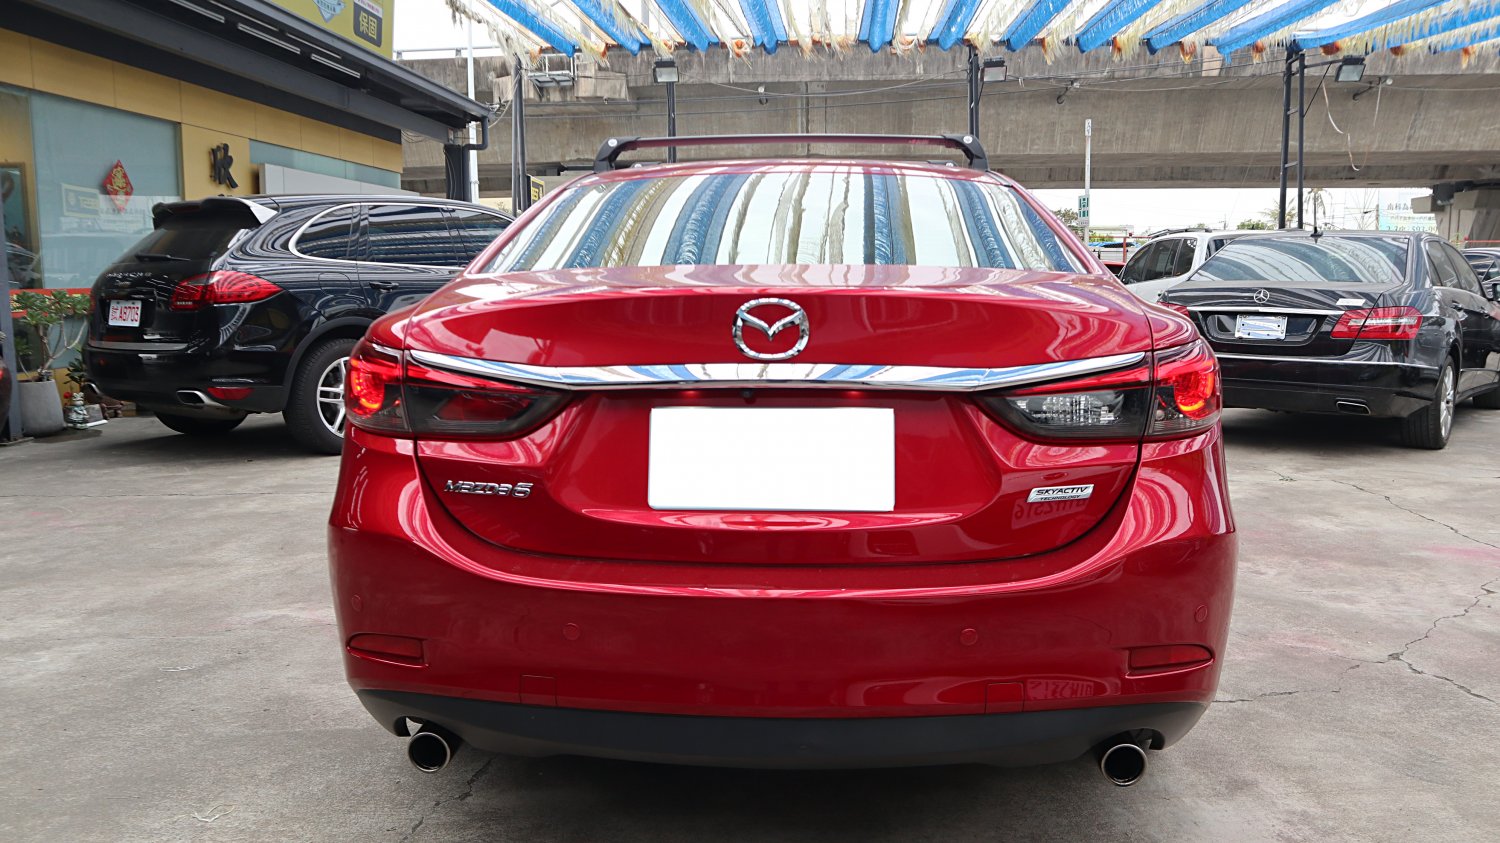 Mazda 馬自達 ／ Mazda 6 ／ 2016年 ／ 2016年 Mazda 6 深紅色 馬自達中古車 ／ MG車庫(台南)